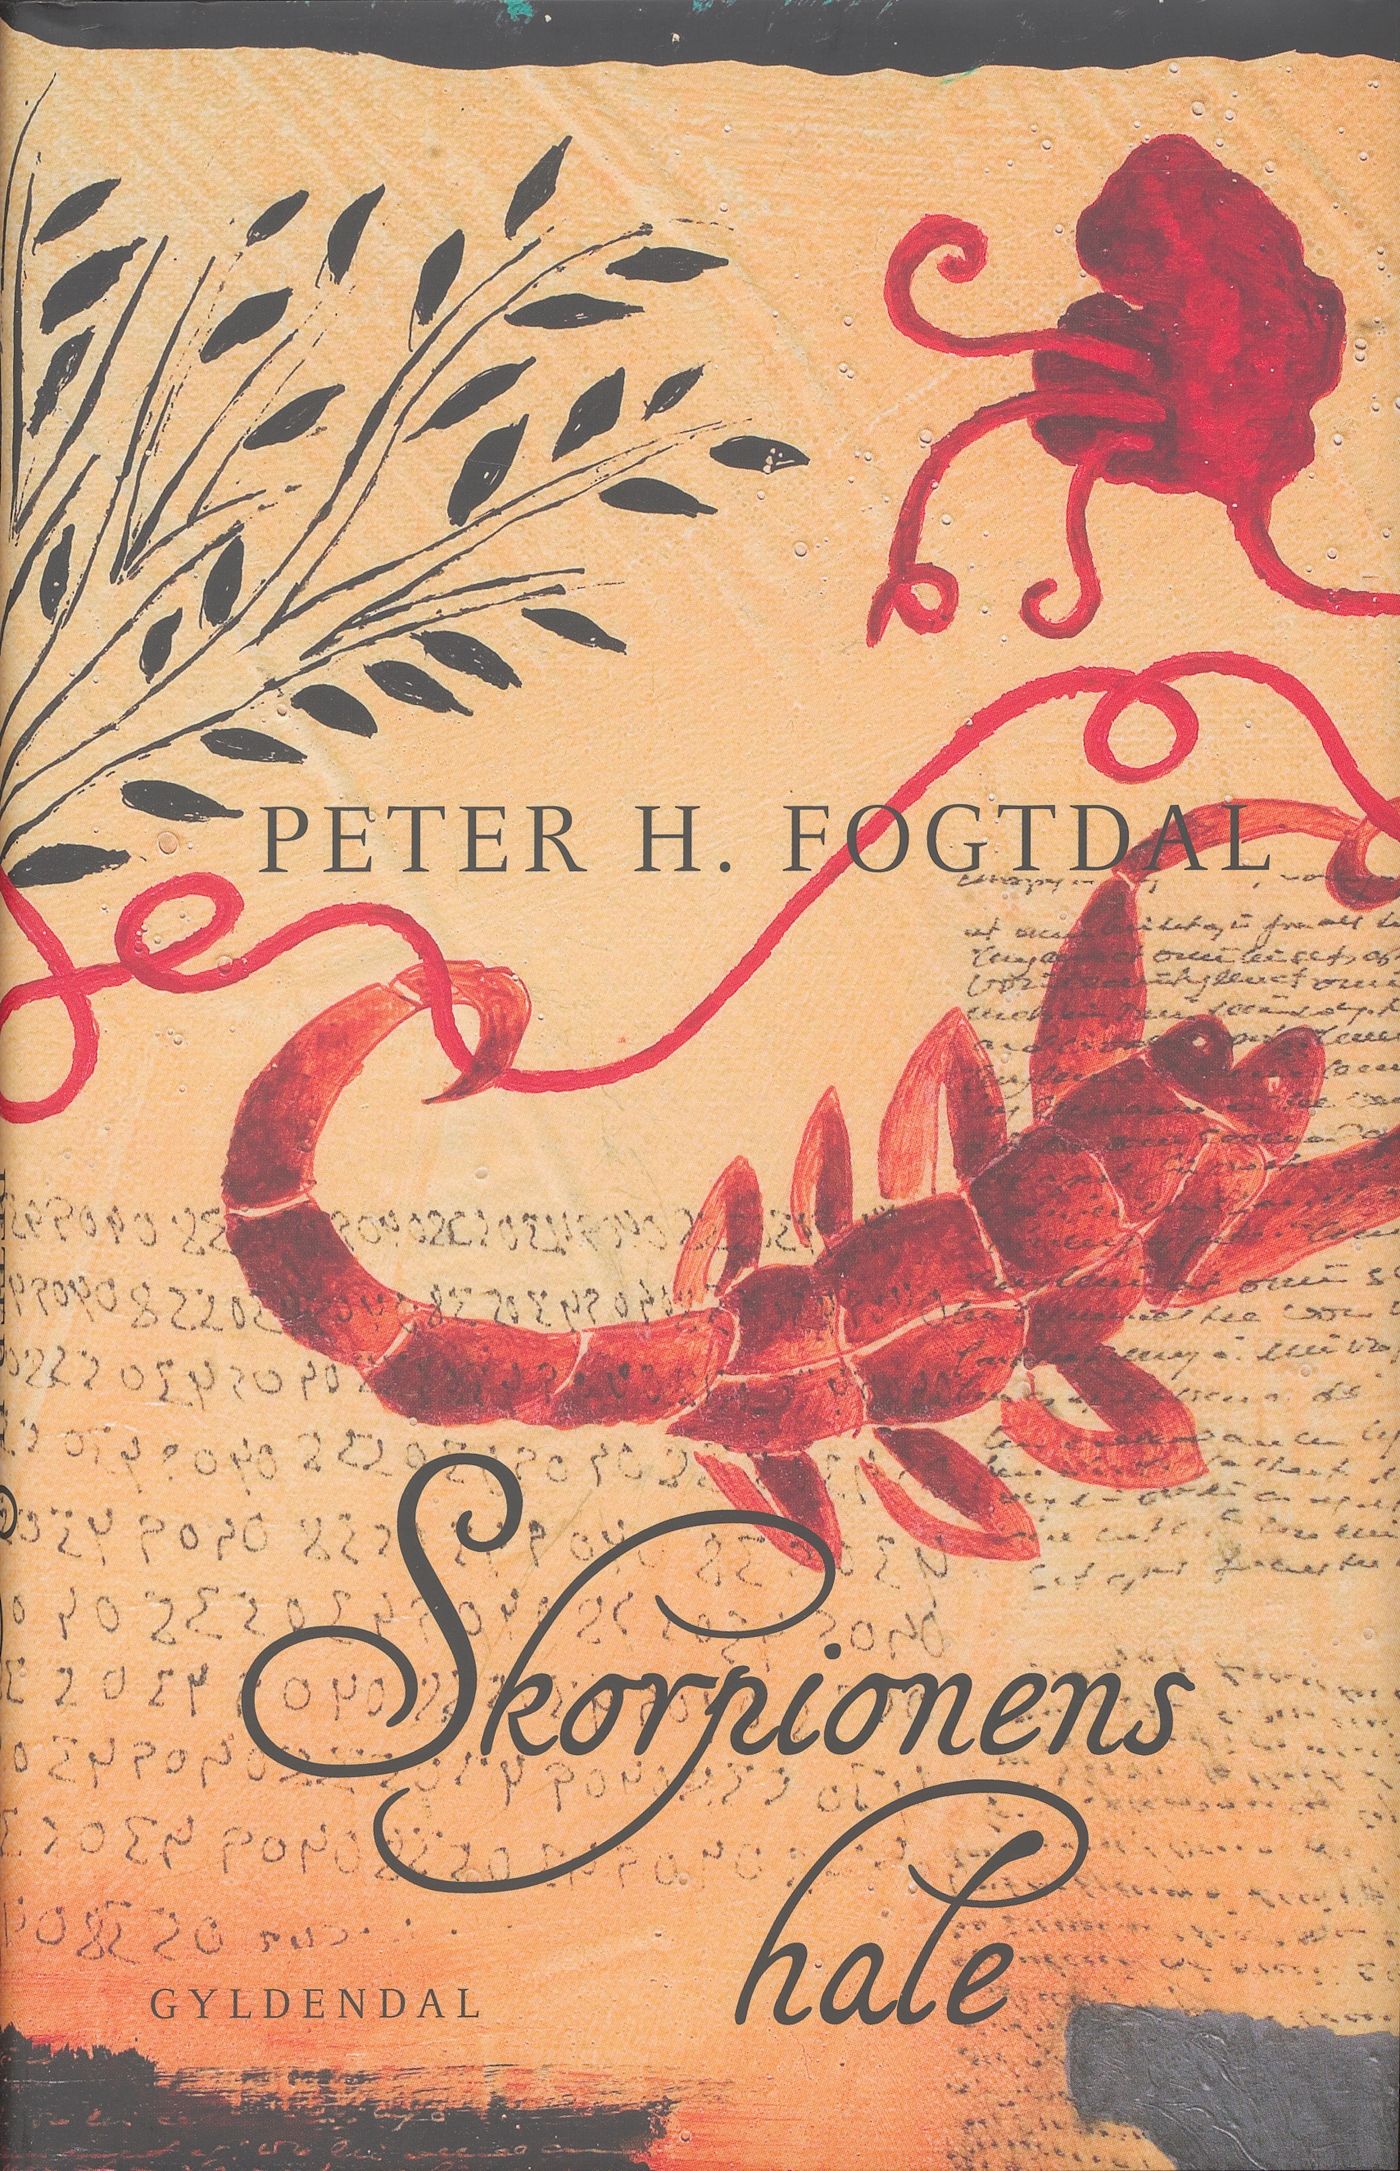 Skorpionens hale, e-bog af Peter H. Fogtdal